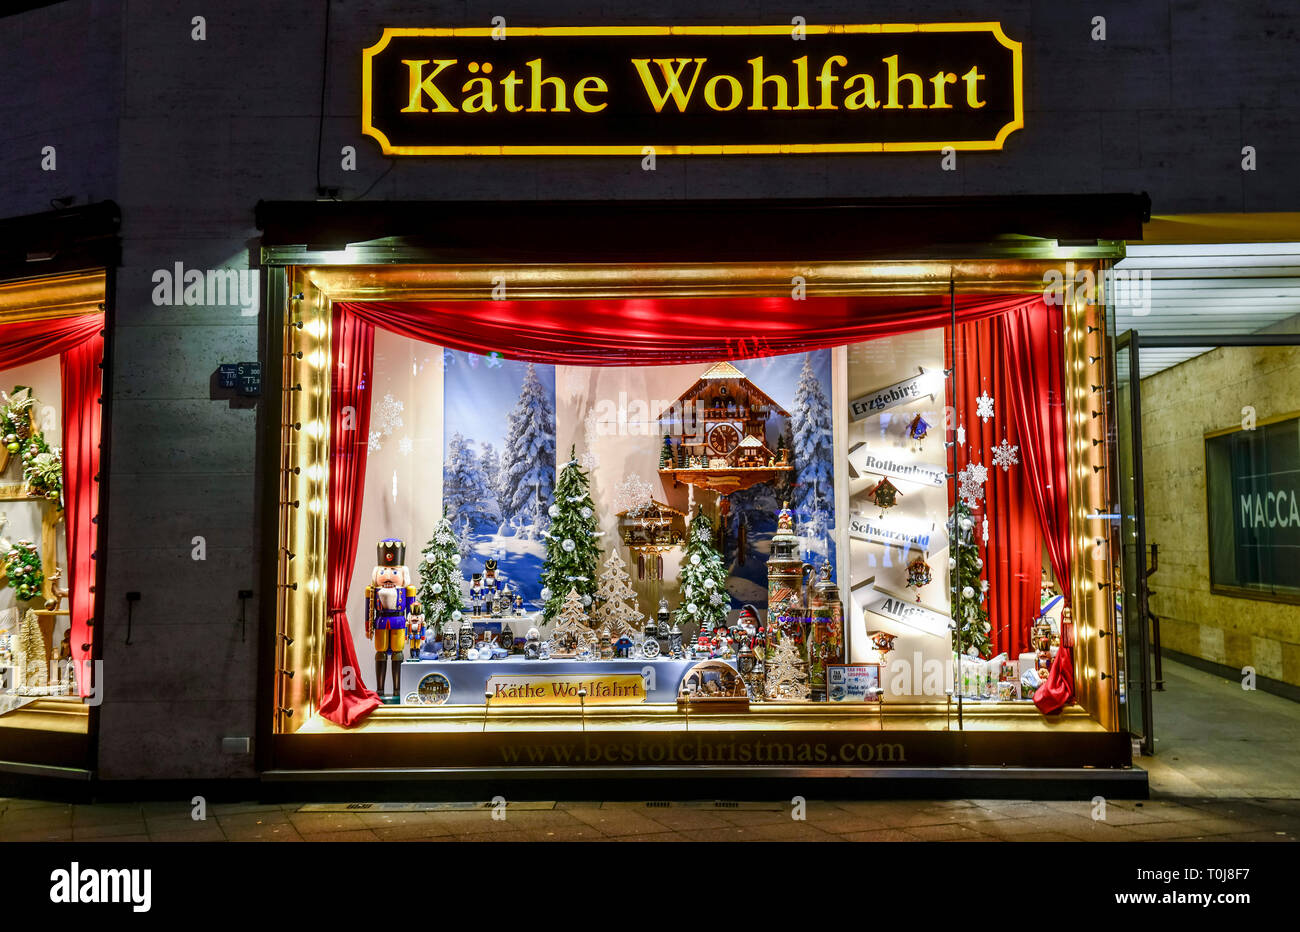 Bien-être Kate, Kurfürstendamm, Charlottenburg, Berlin, Allemagne, Käthe Wohlfahrt, Deutschland Banque D'Images